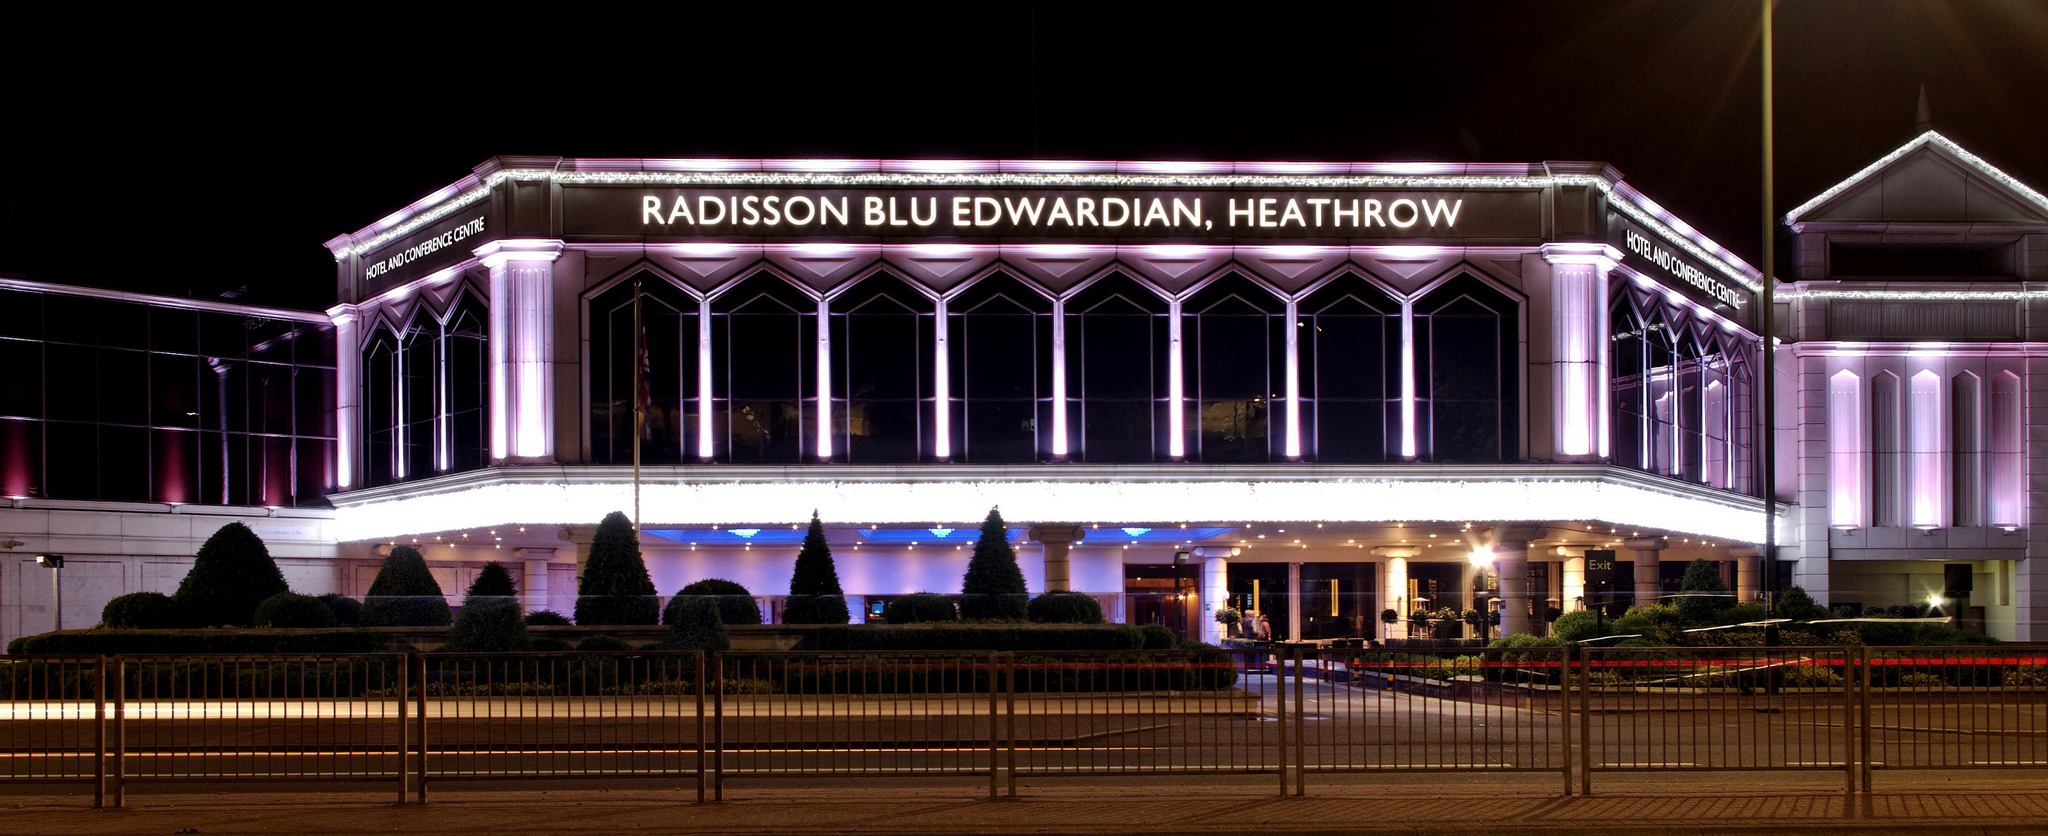 Venue of Radisson Blu Edwardian Heathrow Hotel